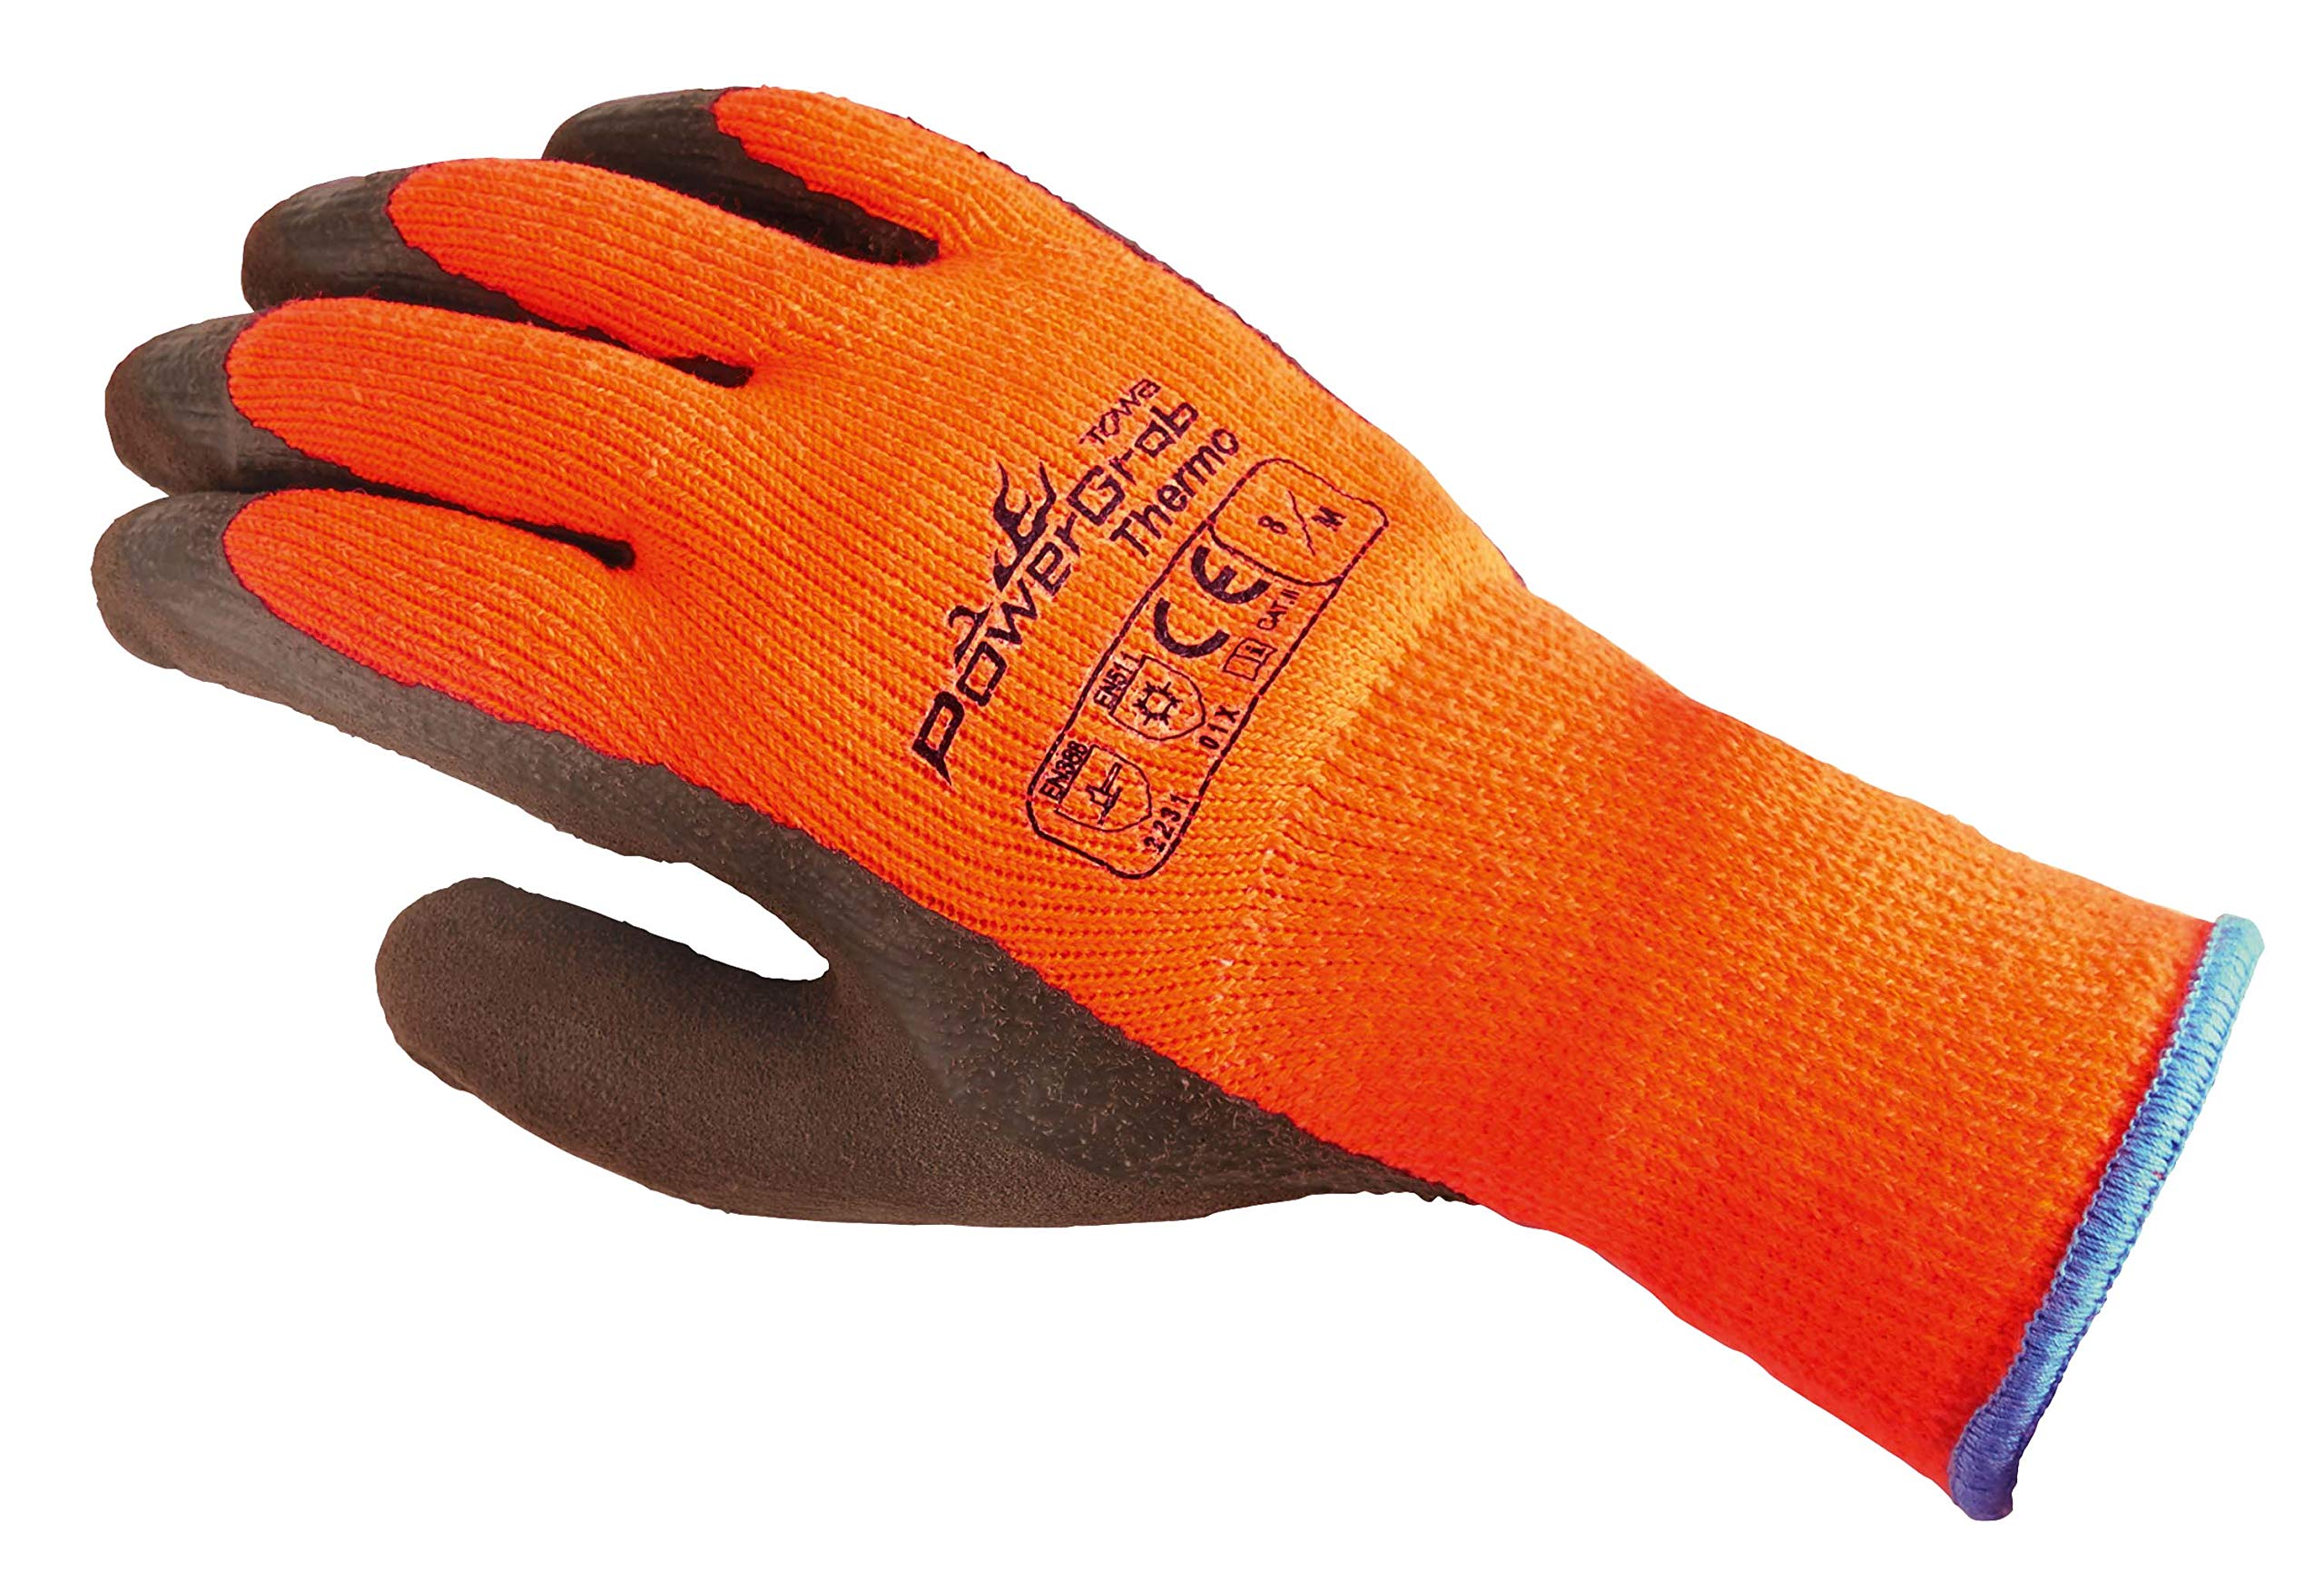 TOWA (6 Paar) Handschuhe Winterhandschuhe PowerGrab Thermo 6 x orange/braun 7